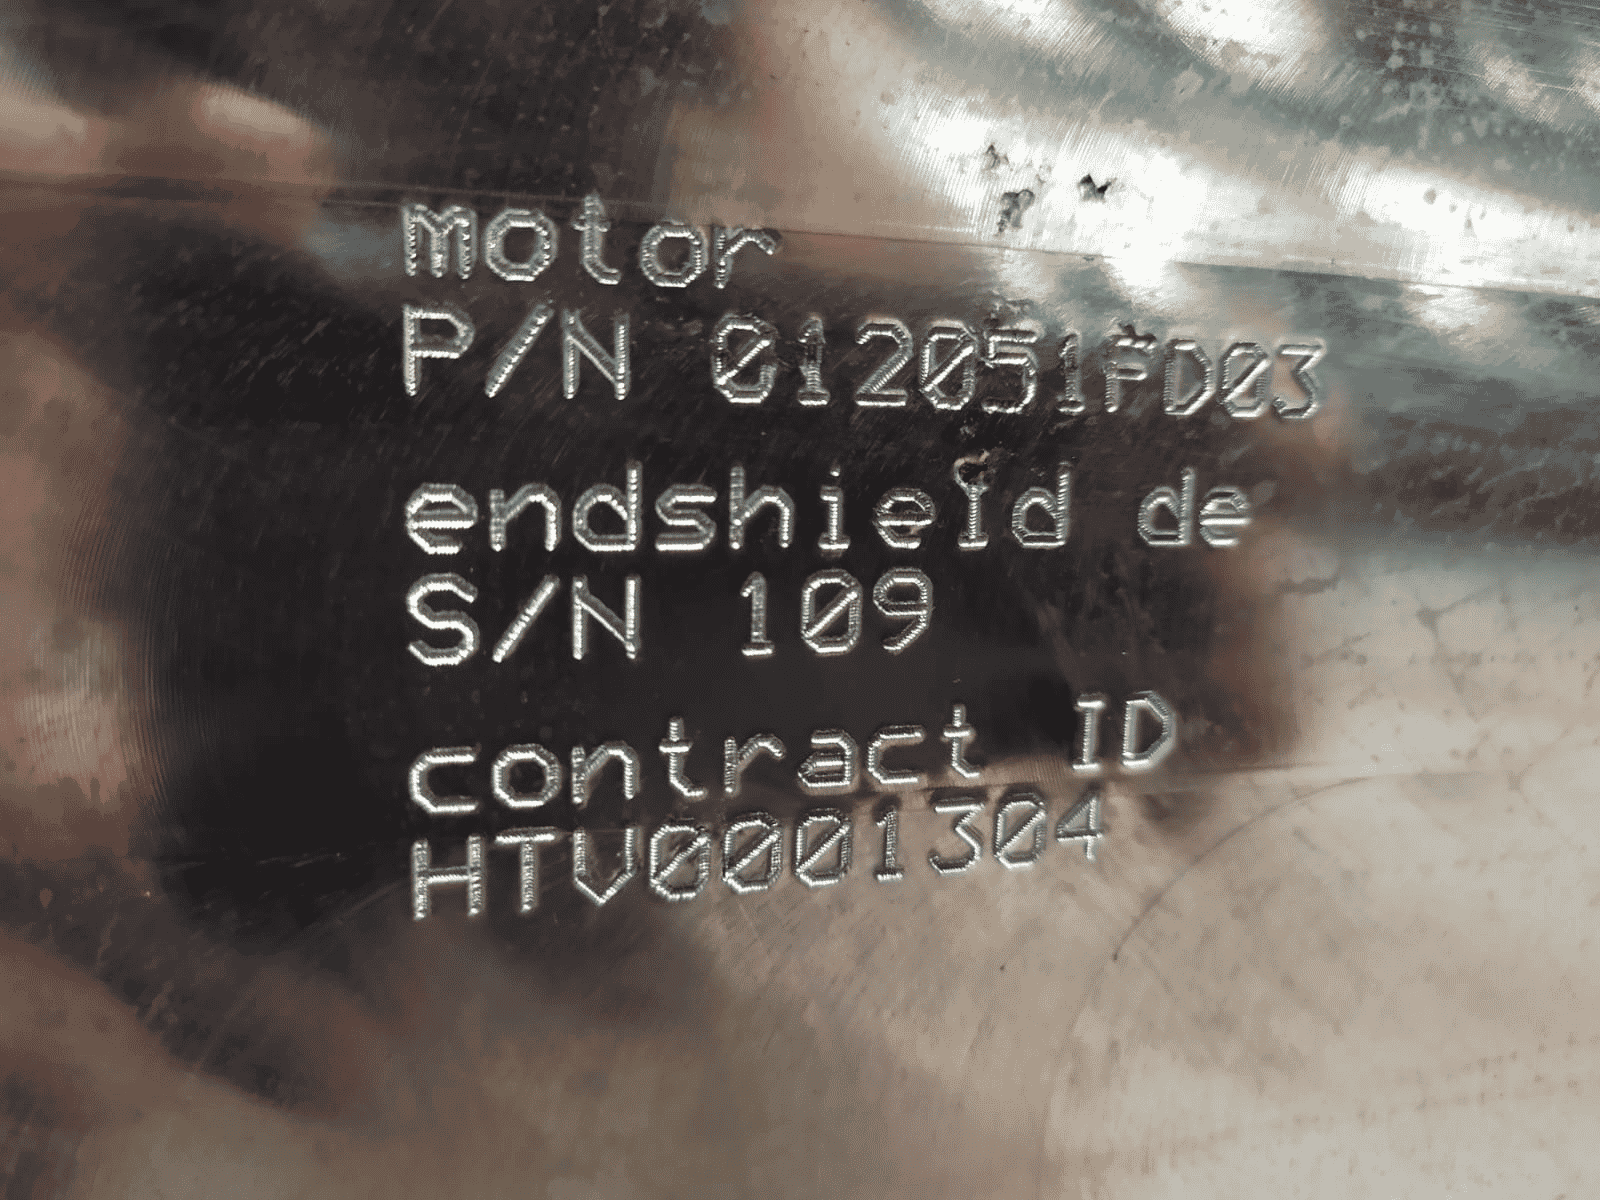 Marquage alphanumérique par micro-percussions sur un moteur de métro